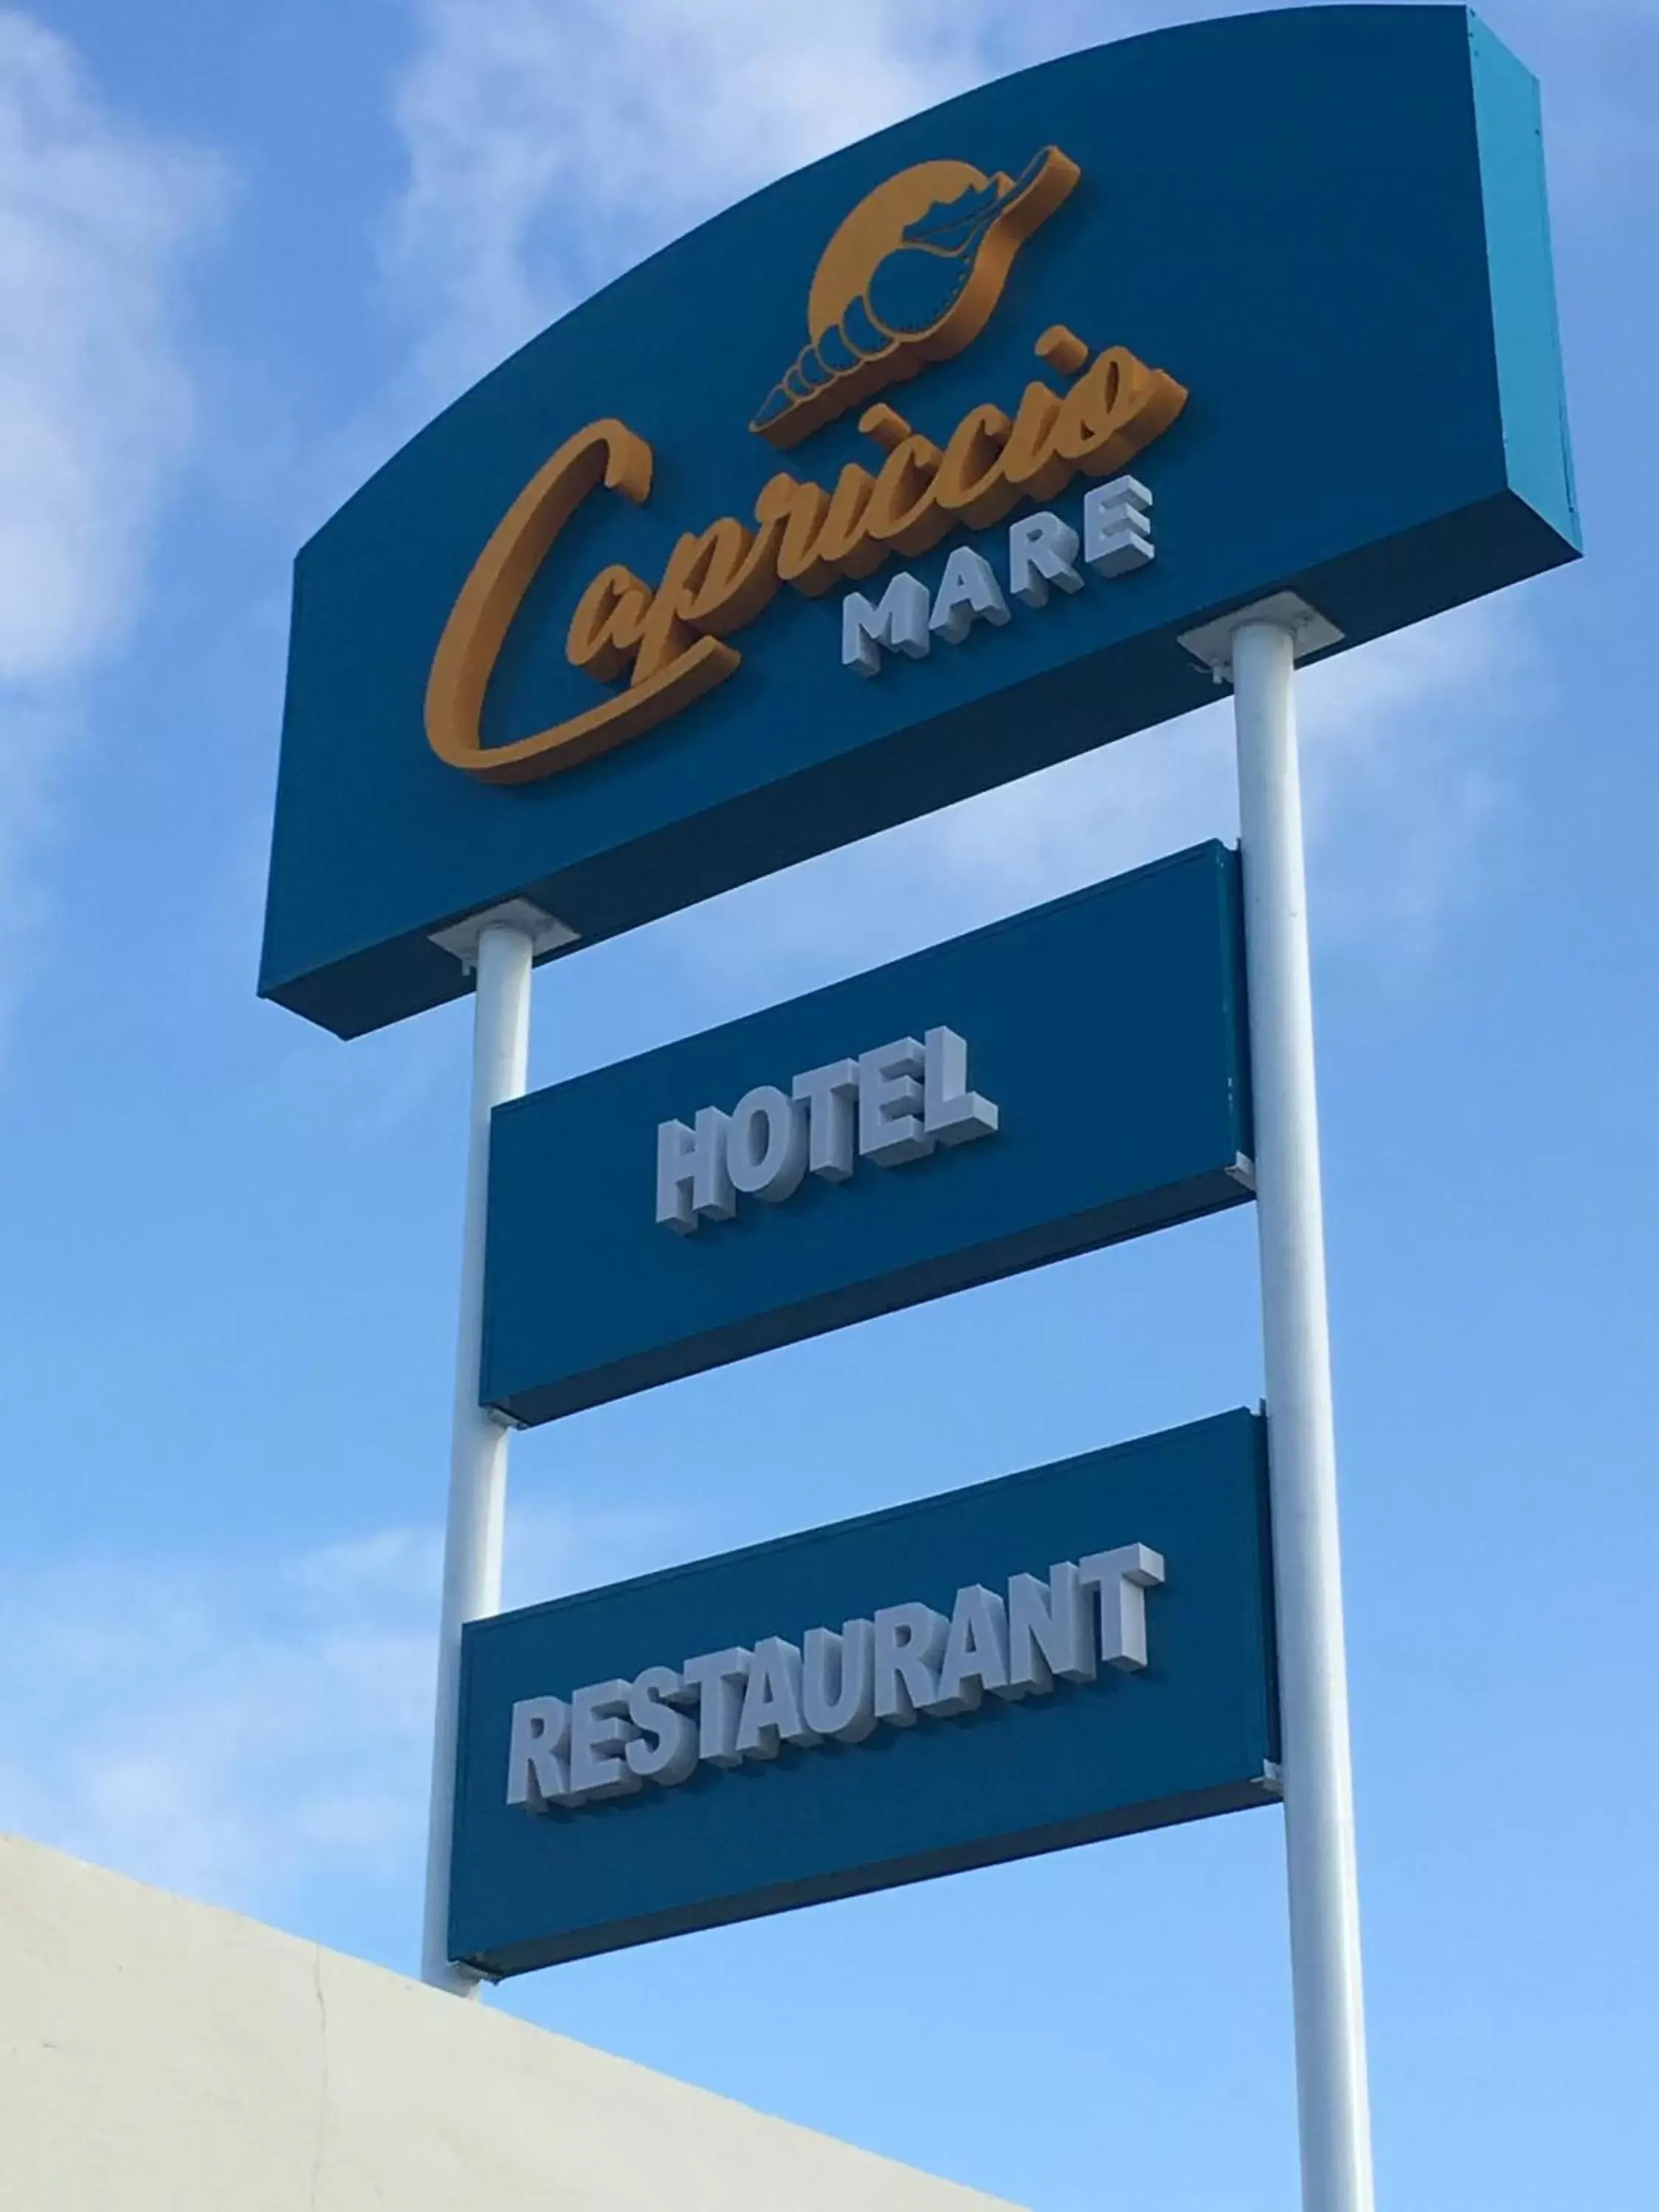 Property logo or sign in Hotel Capriccio Mare y Restaurante